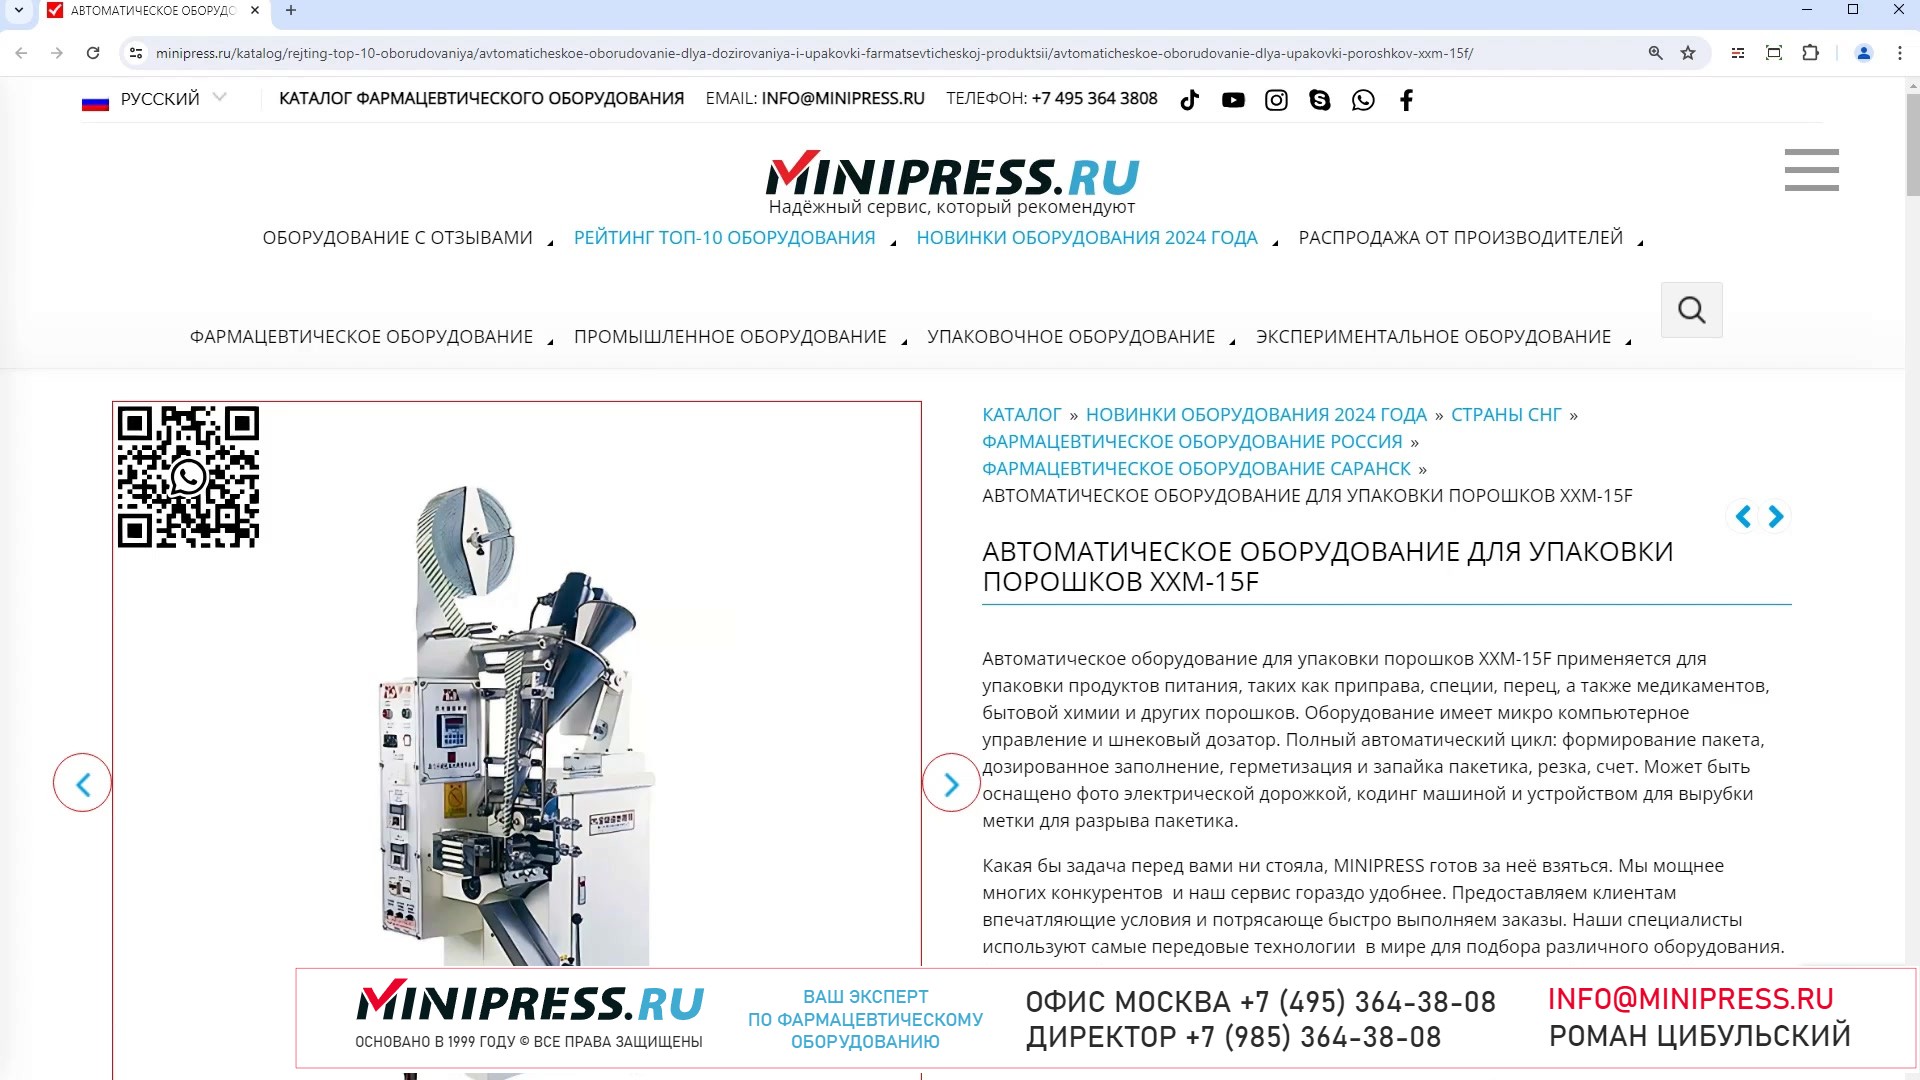 Minipress.ru Автоматическое оборудование для упаковки порошков XXM-15F